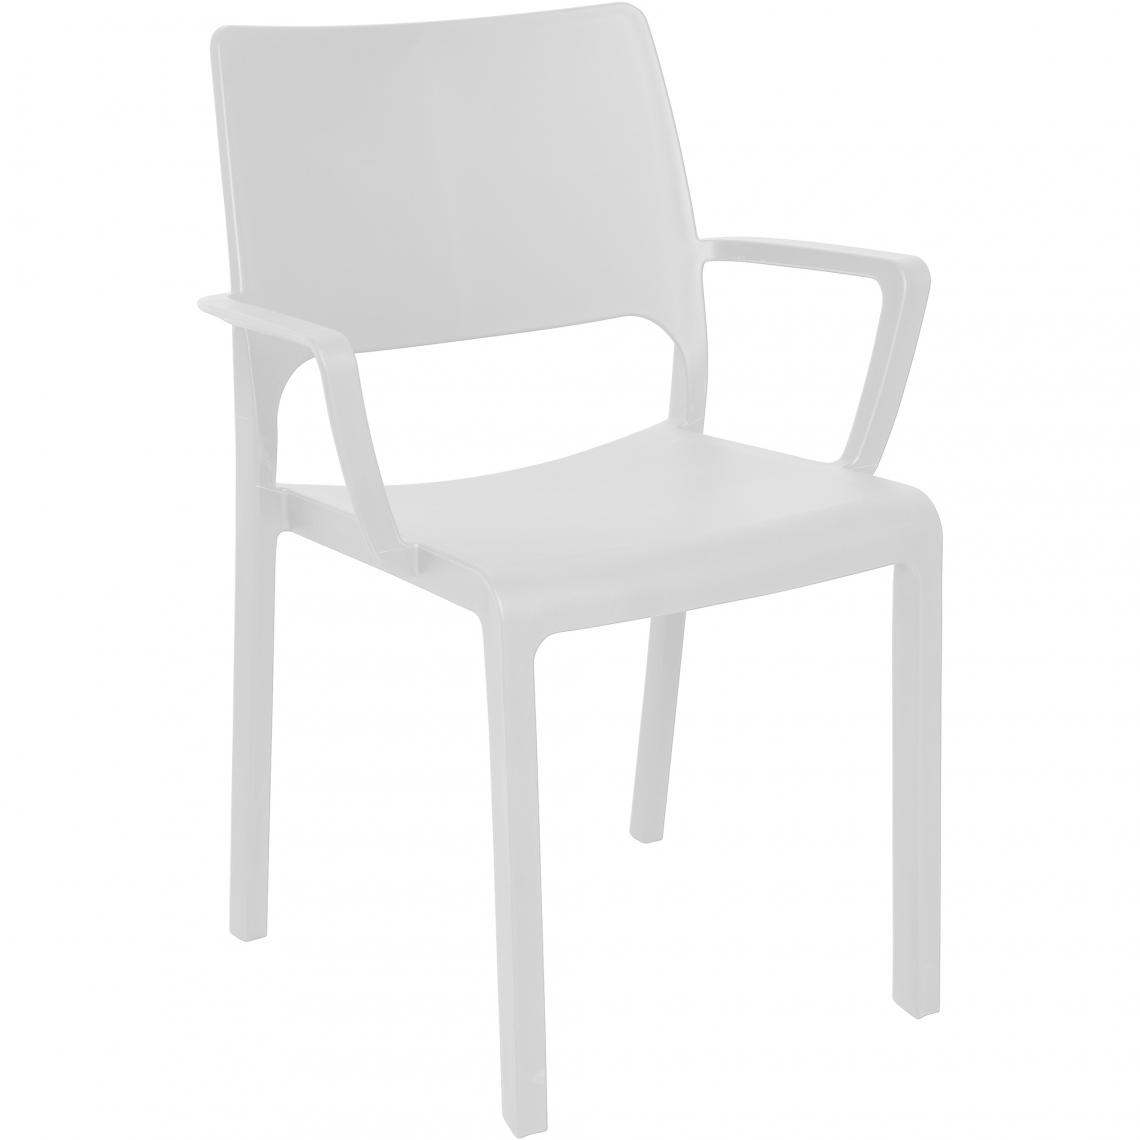 Alter - Fauteuil empilable pour intérieur et extérieur, Made in Italy, 58x52x82 cm, couleur blanc - Chaises